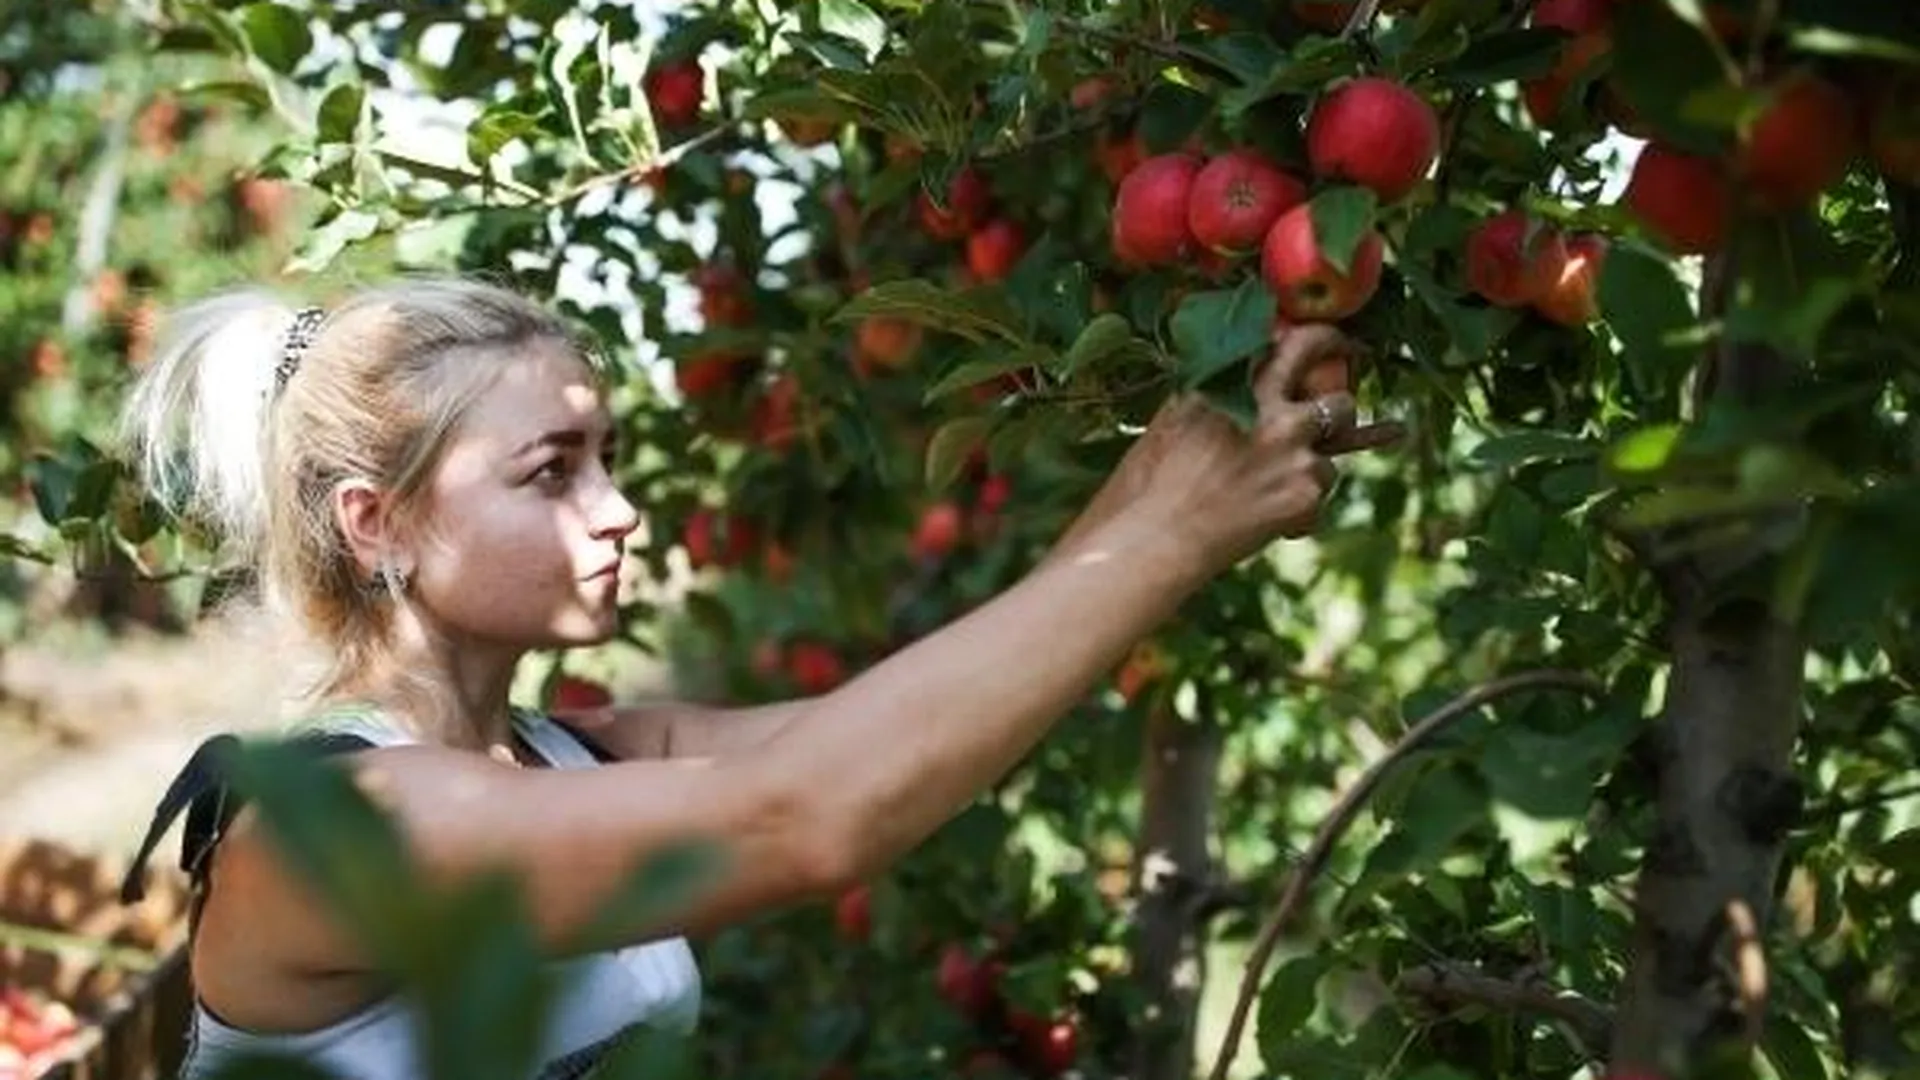 Яблочный бум в Подмосковье: узнай, куда деть лишний урожай